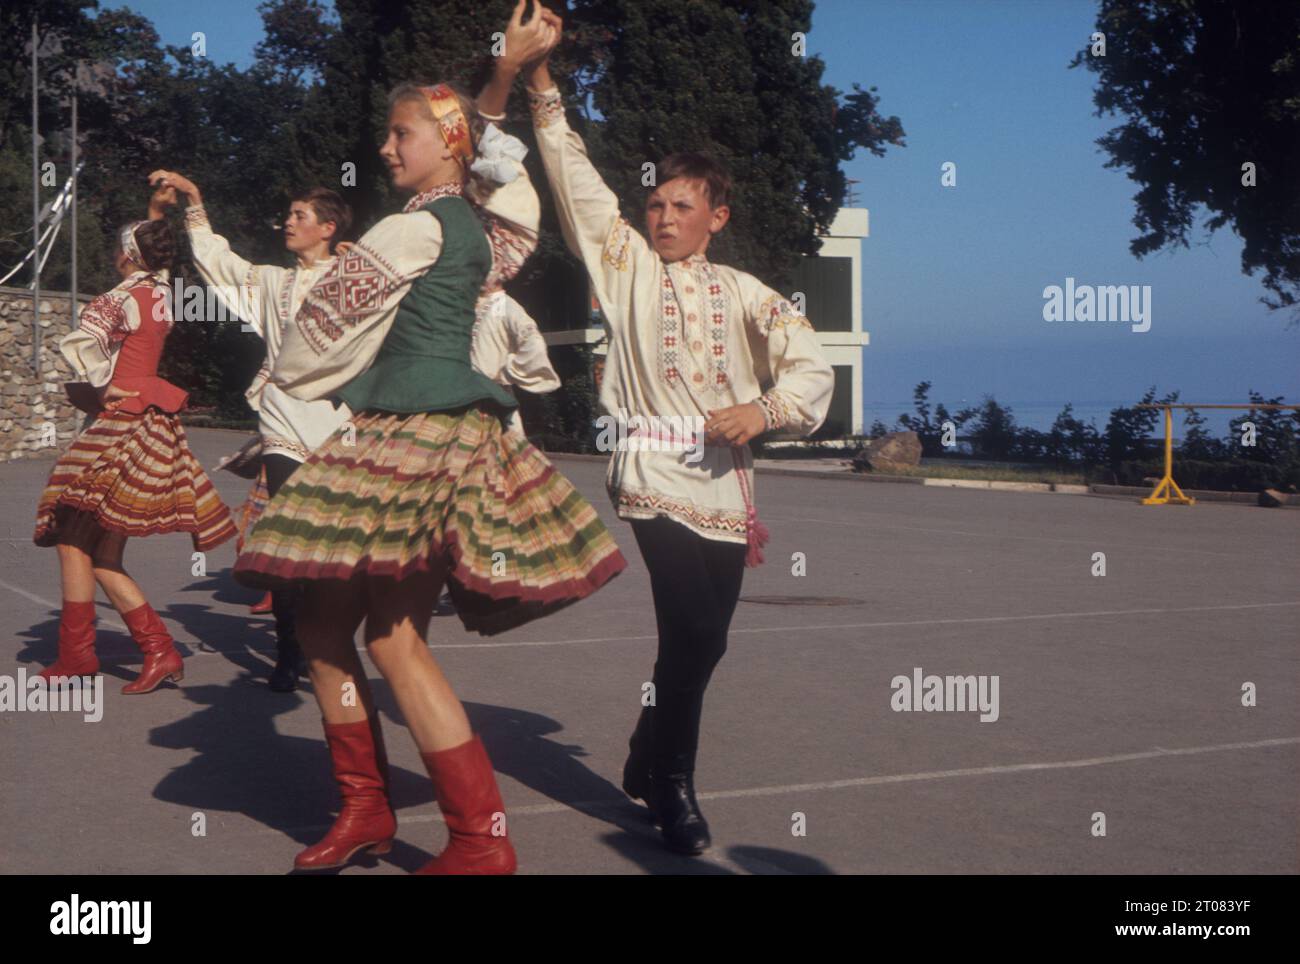 URSS (Unione delle Repubbliche Socialiste sovietiche) Crimea. Pionieri che eseguono danza folcloristica presso il campo dei pionieri di Artek Foto Stock